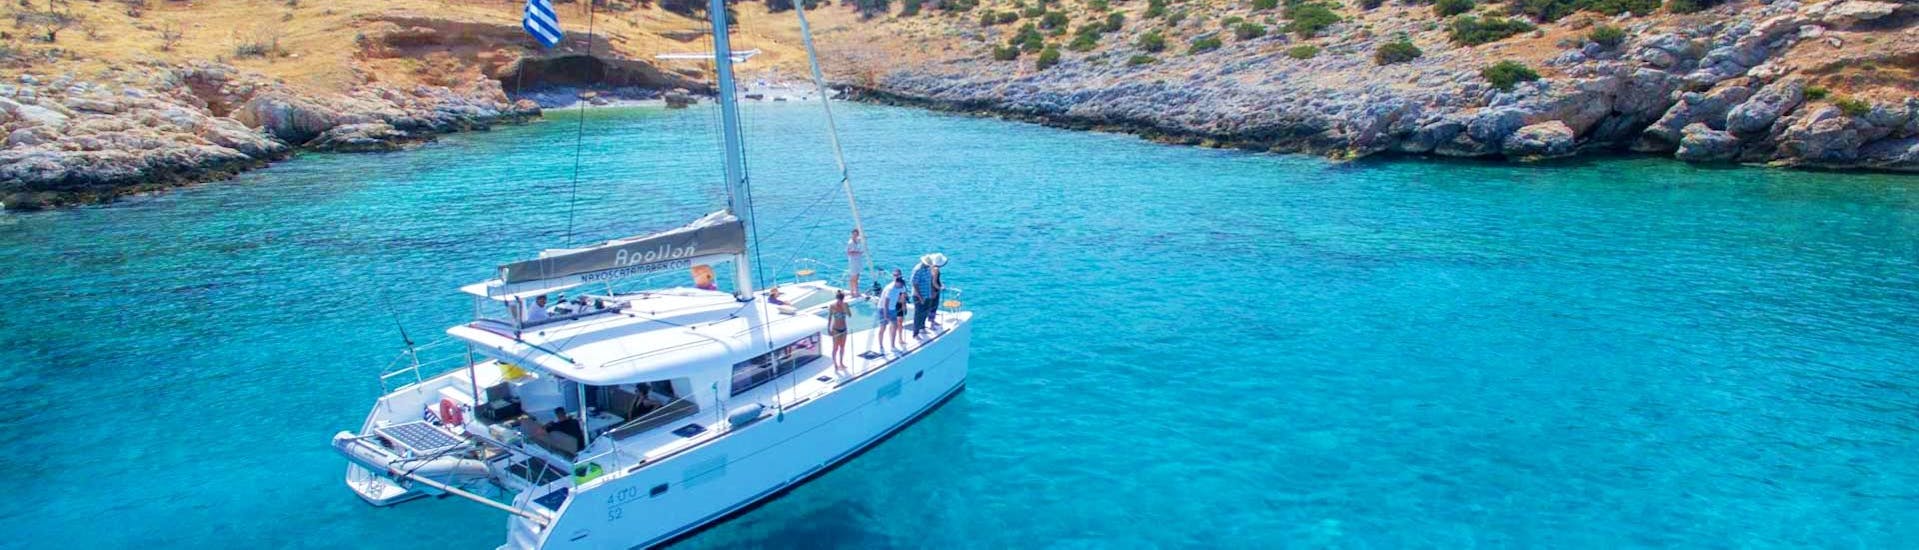 Le catamaran Apollon de Naxos Catamaran navigue le long de la côte rocheuse des Cyclades pendant la croisière privée sur un catamaran de luxe au départ de Naxos.